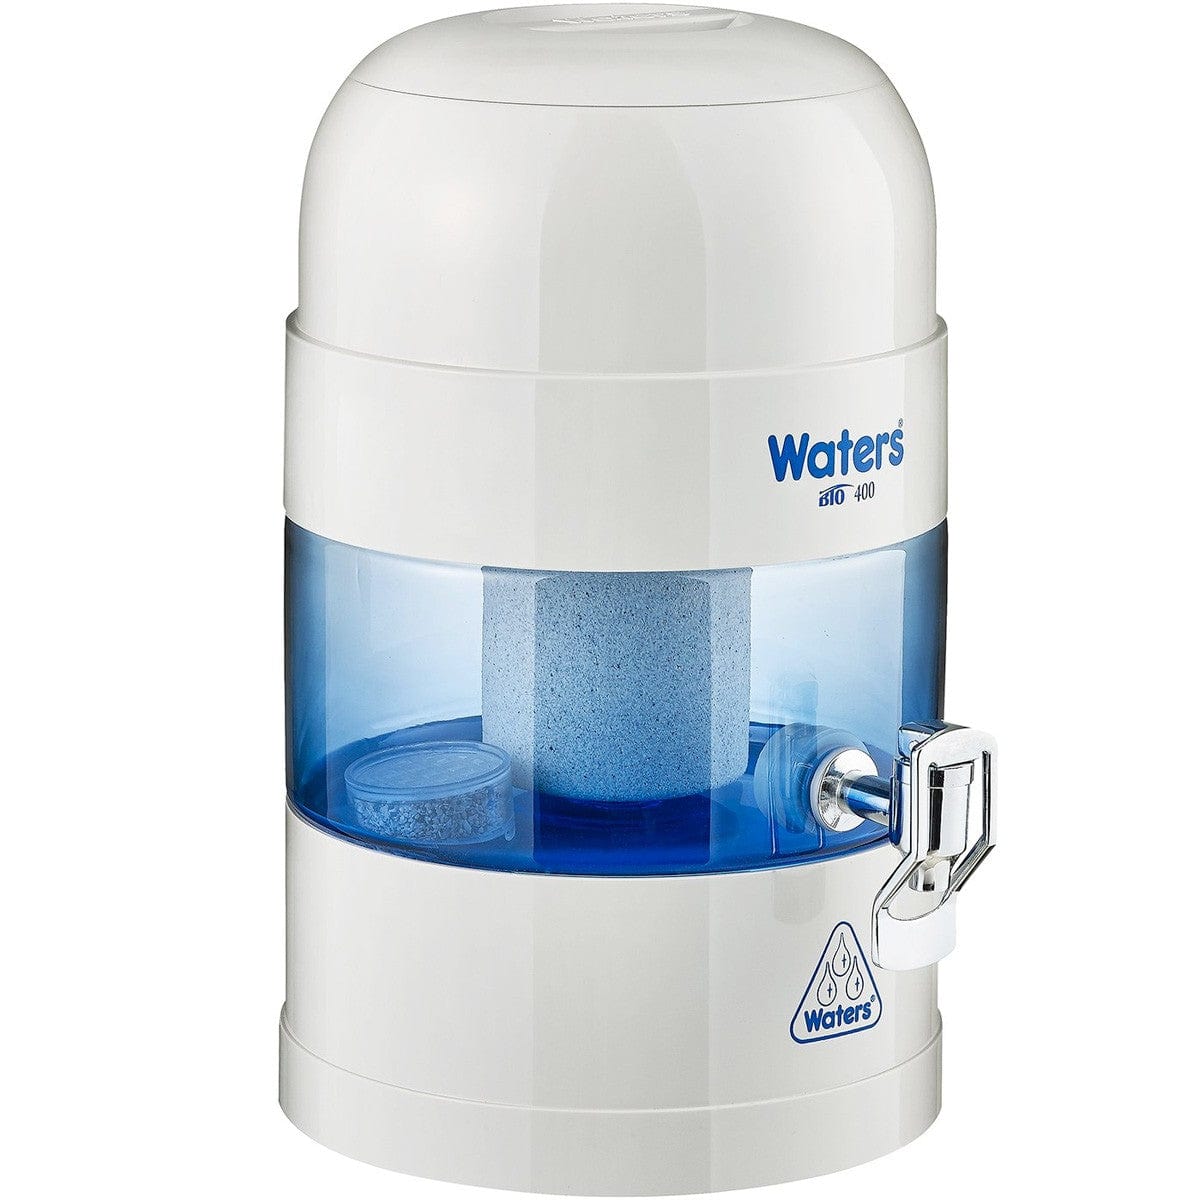 WatersCo BIO 400/500 Benchtop Water Filter Replacement Filter Kit